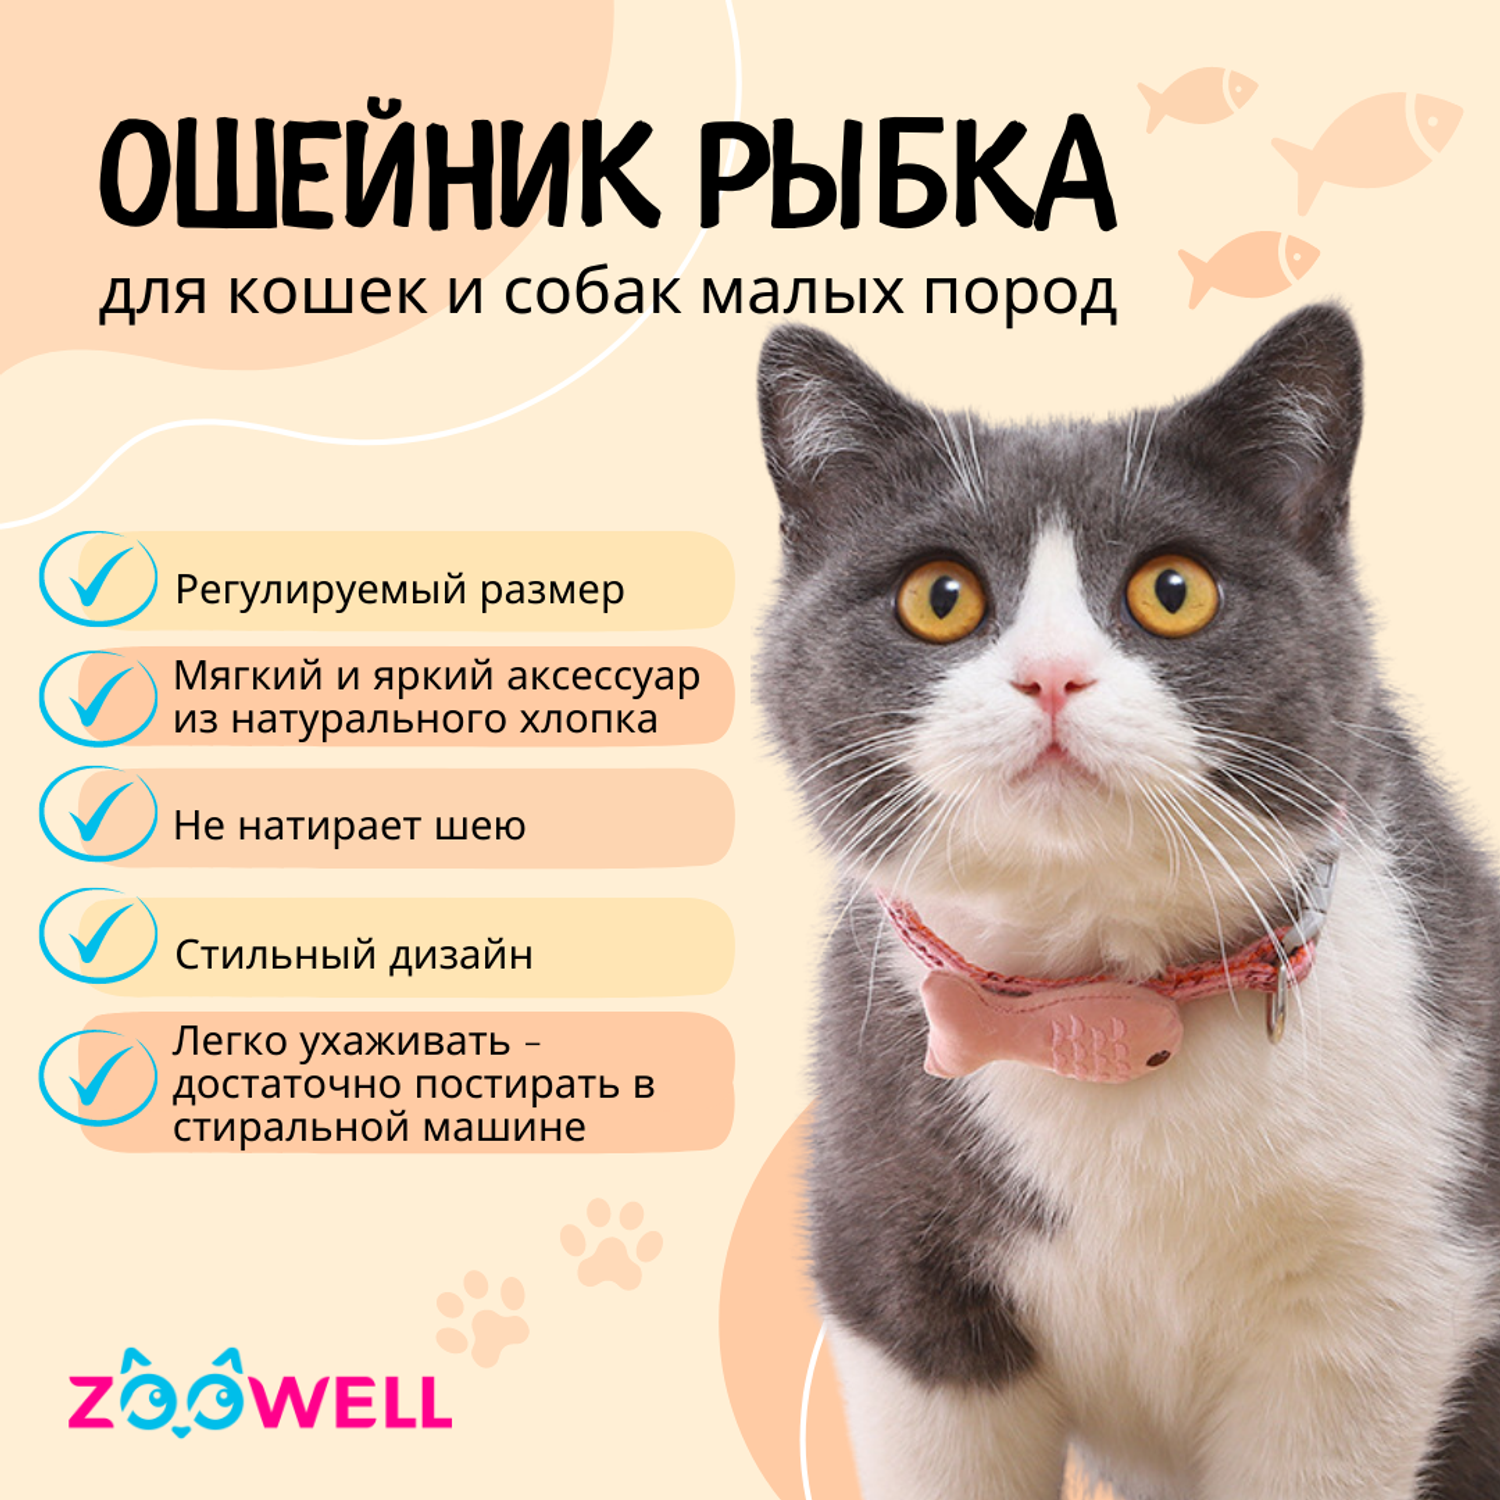 Ошейник ZDK для кошек и миниатюрных собак ZooWell розовый - фото 2